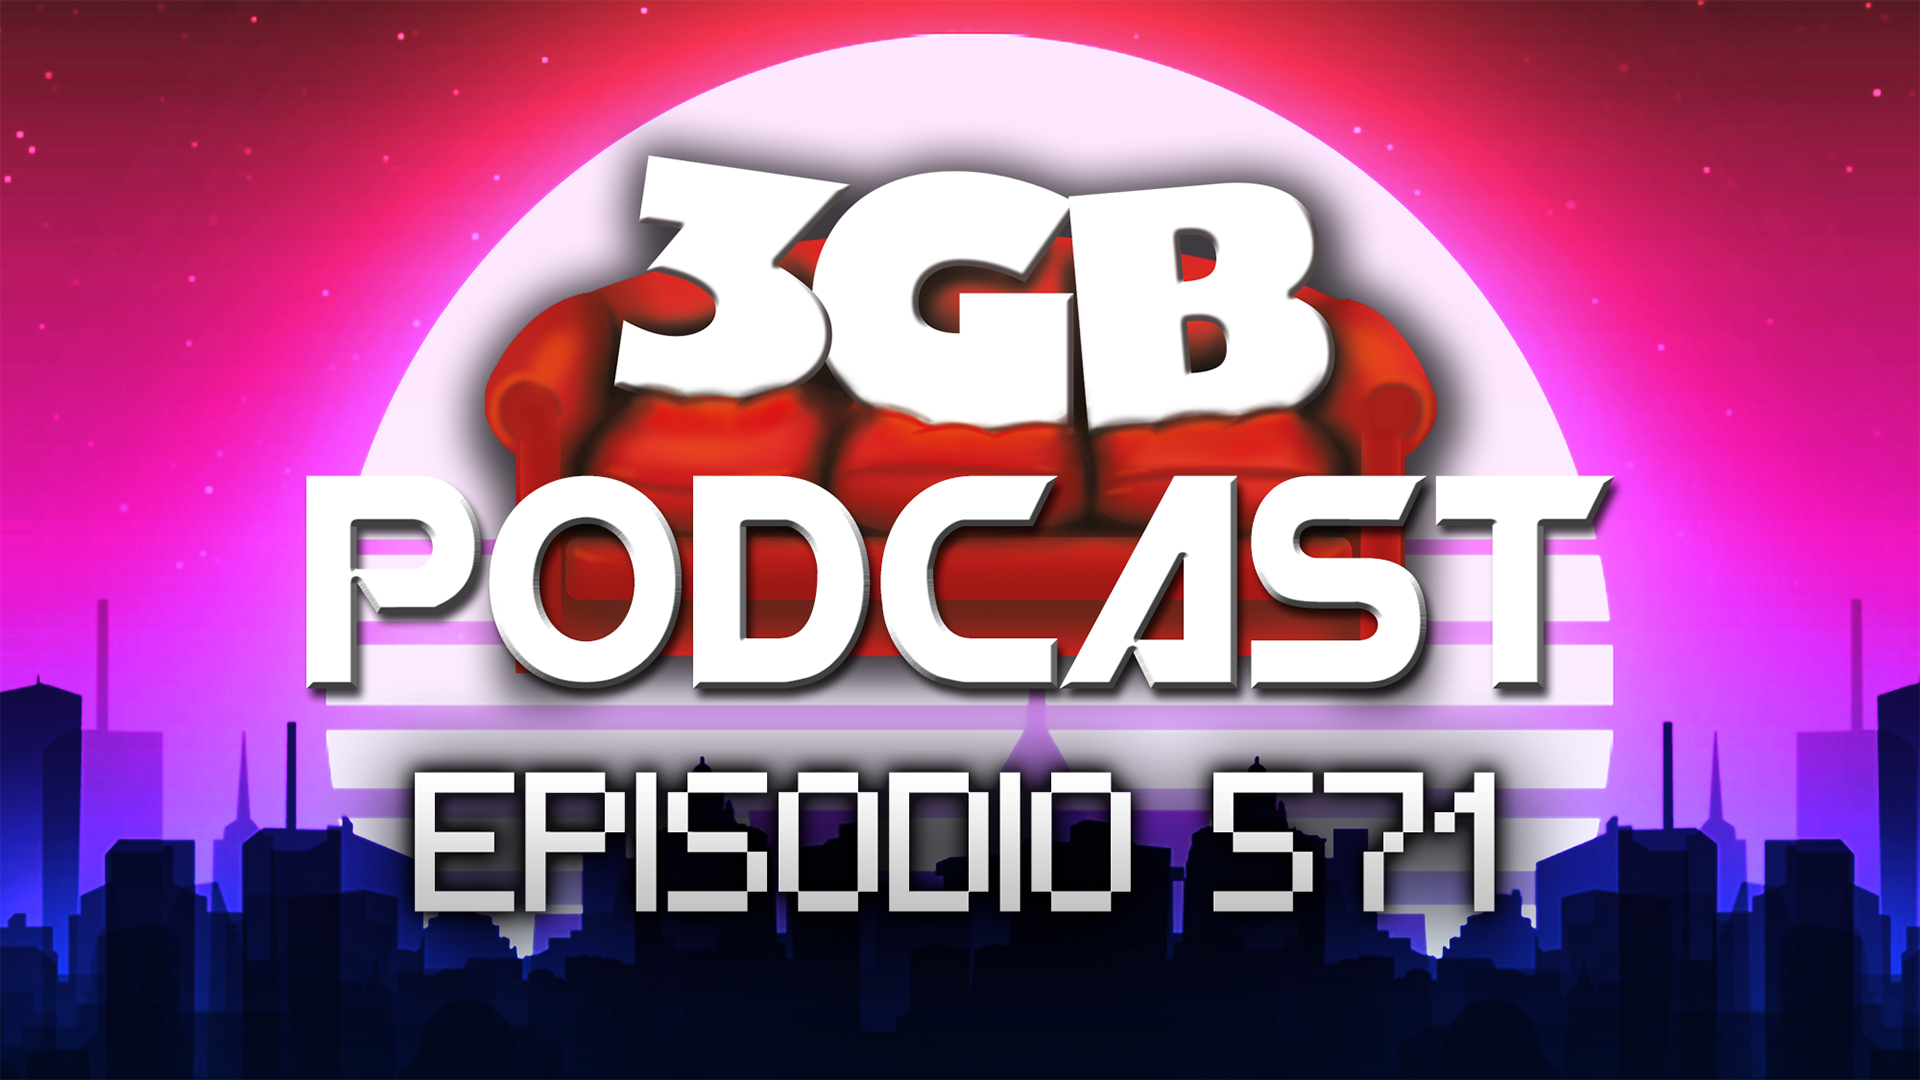 Podcast: Episodio 571, La Magia de Astro Bot